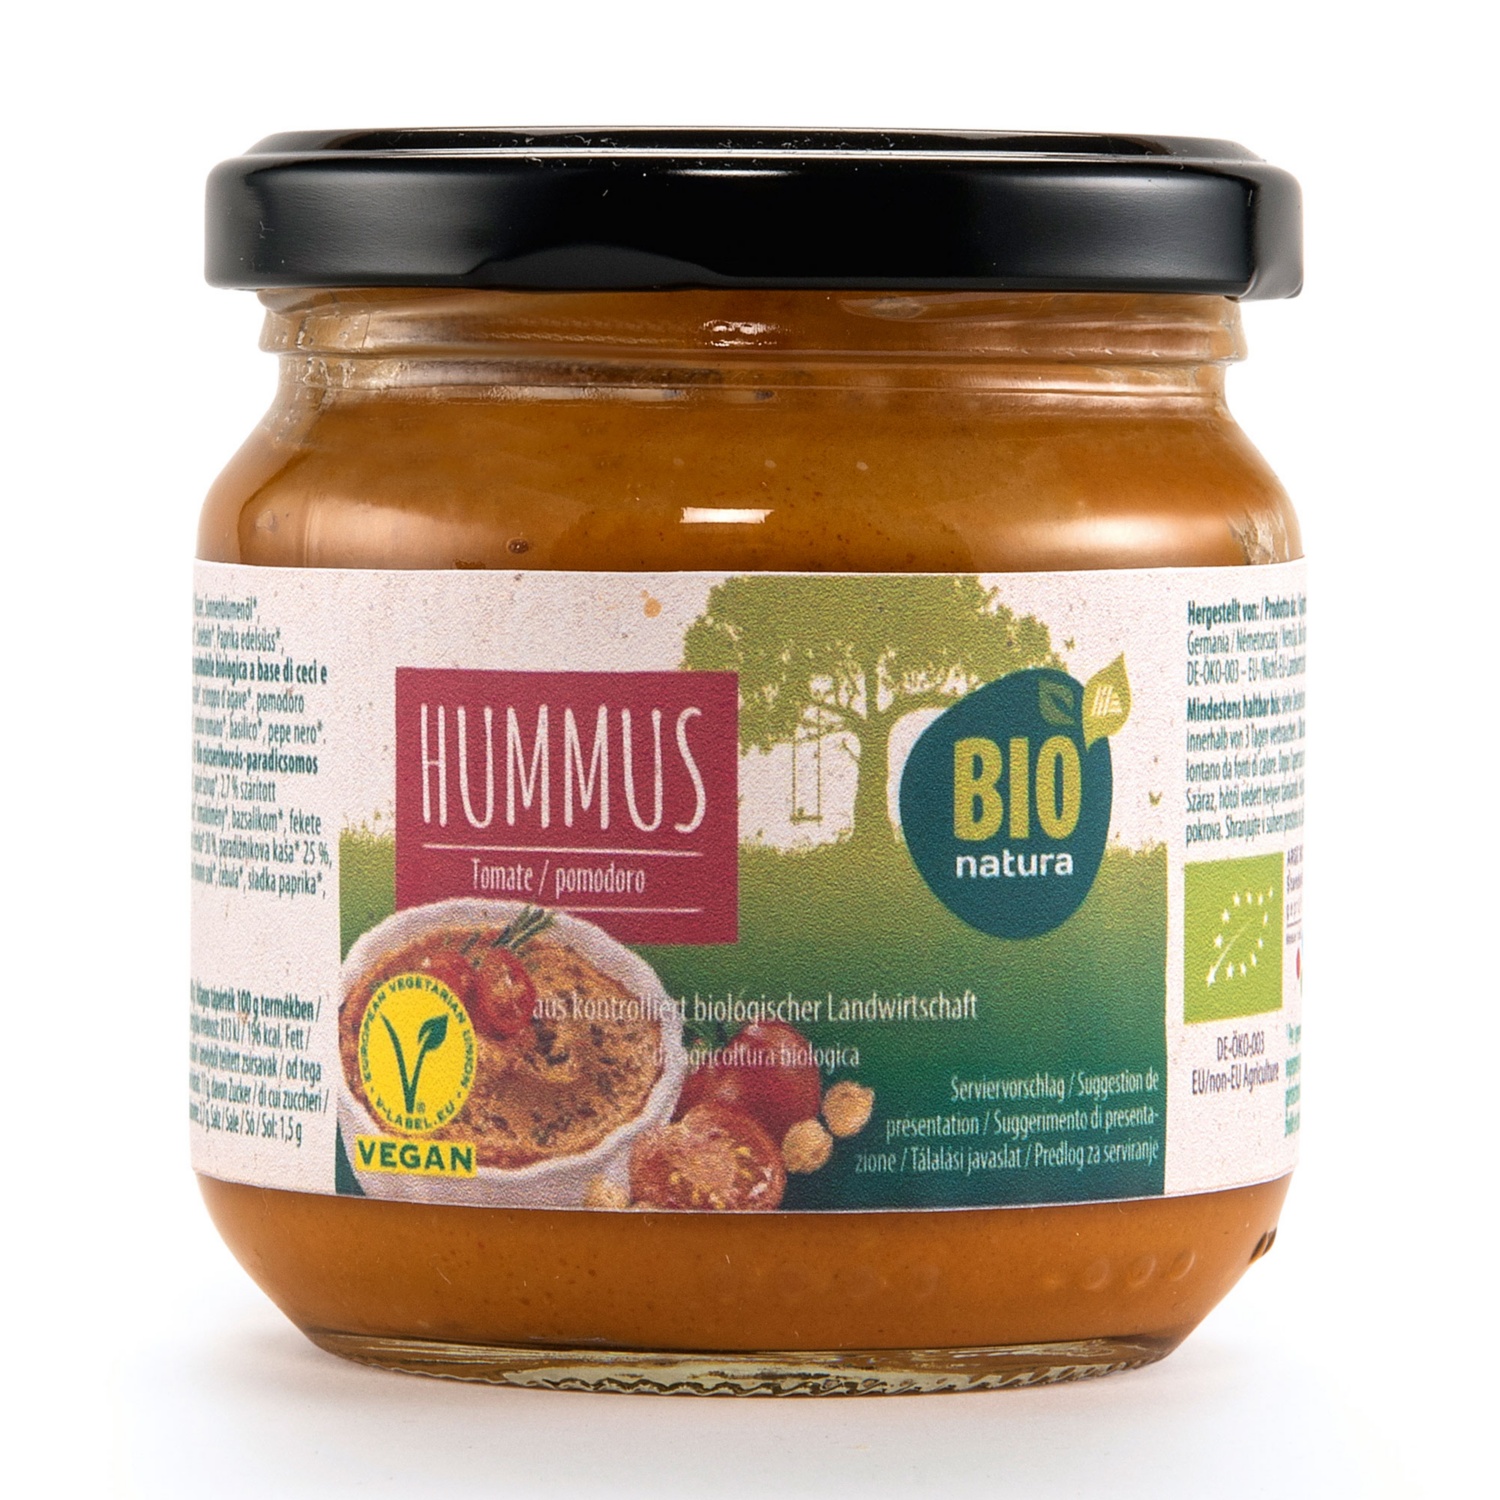 BIO NATURA Bio humus, paradižnikov